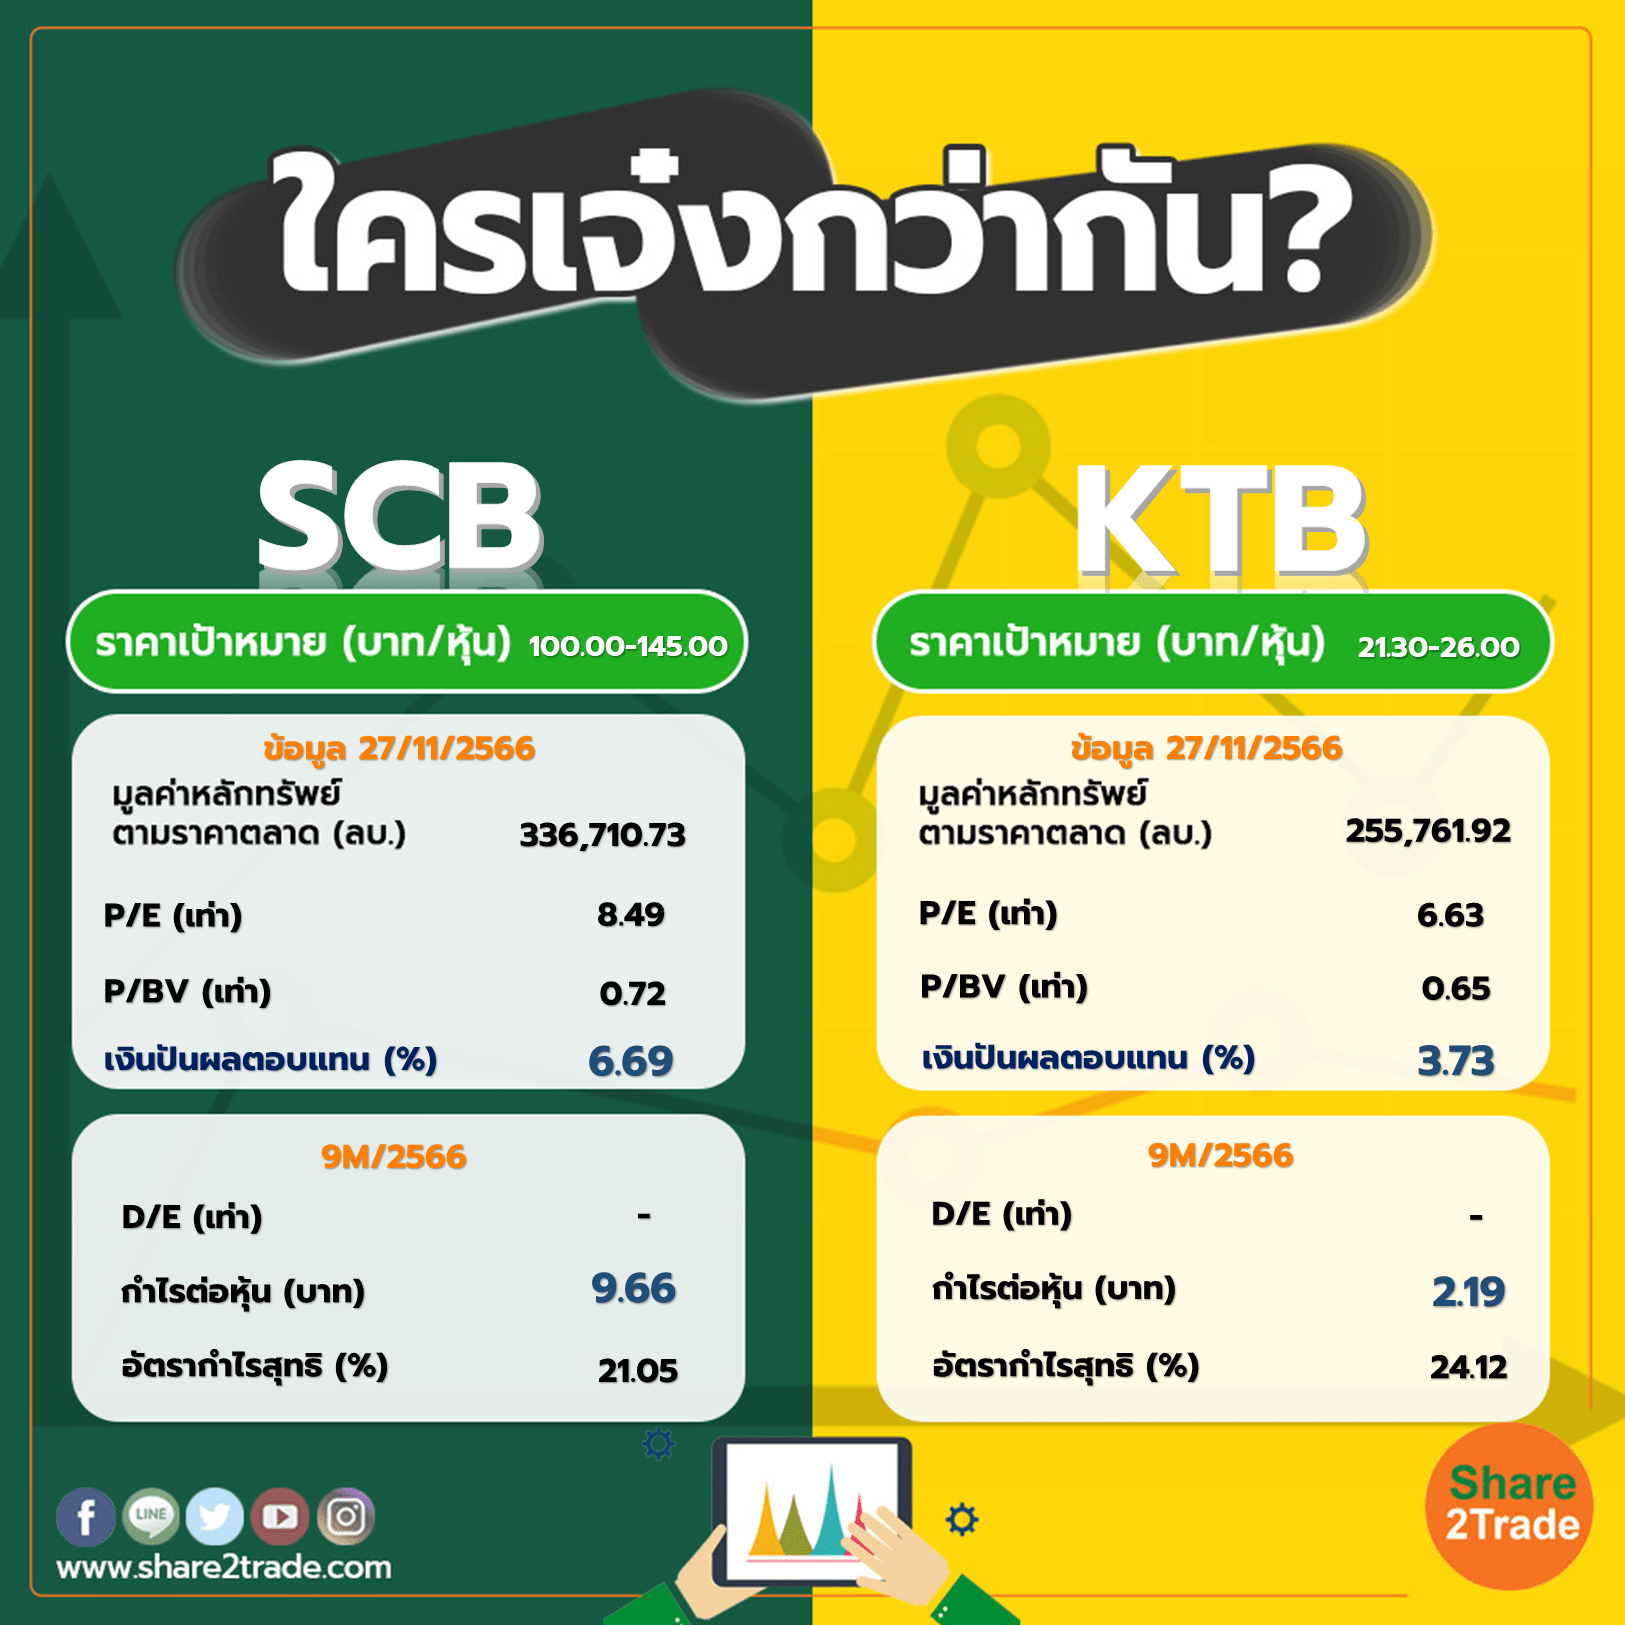 ใครเจ๋งกว่ากัน "SCB" VS "KTB"